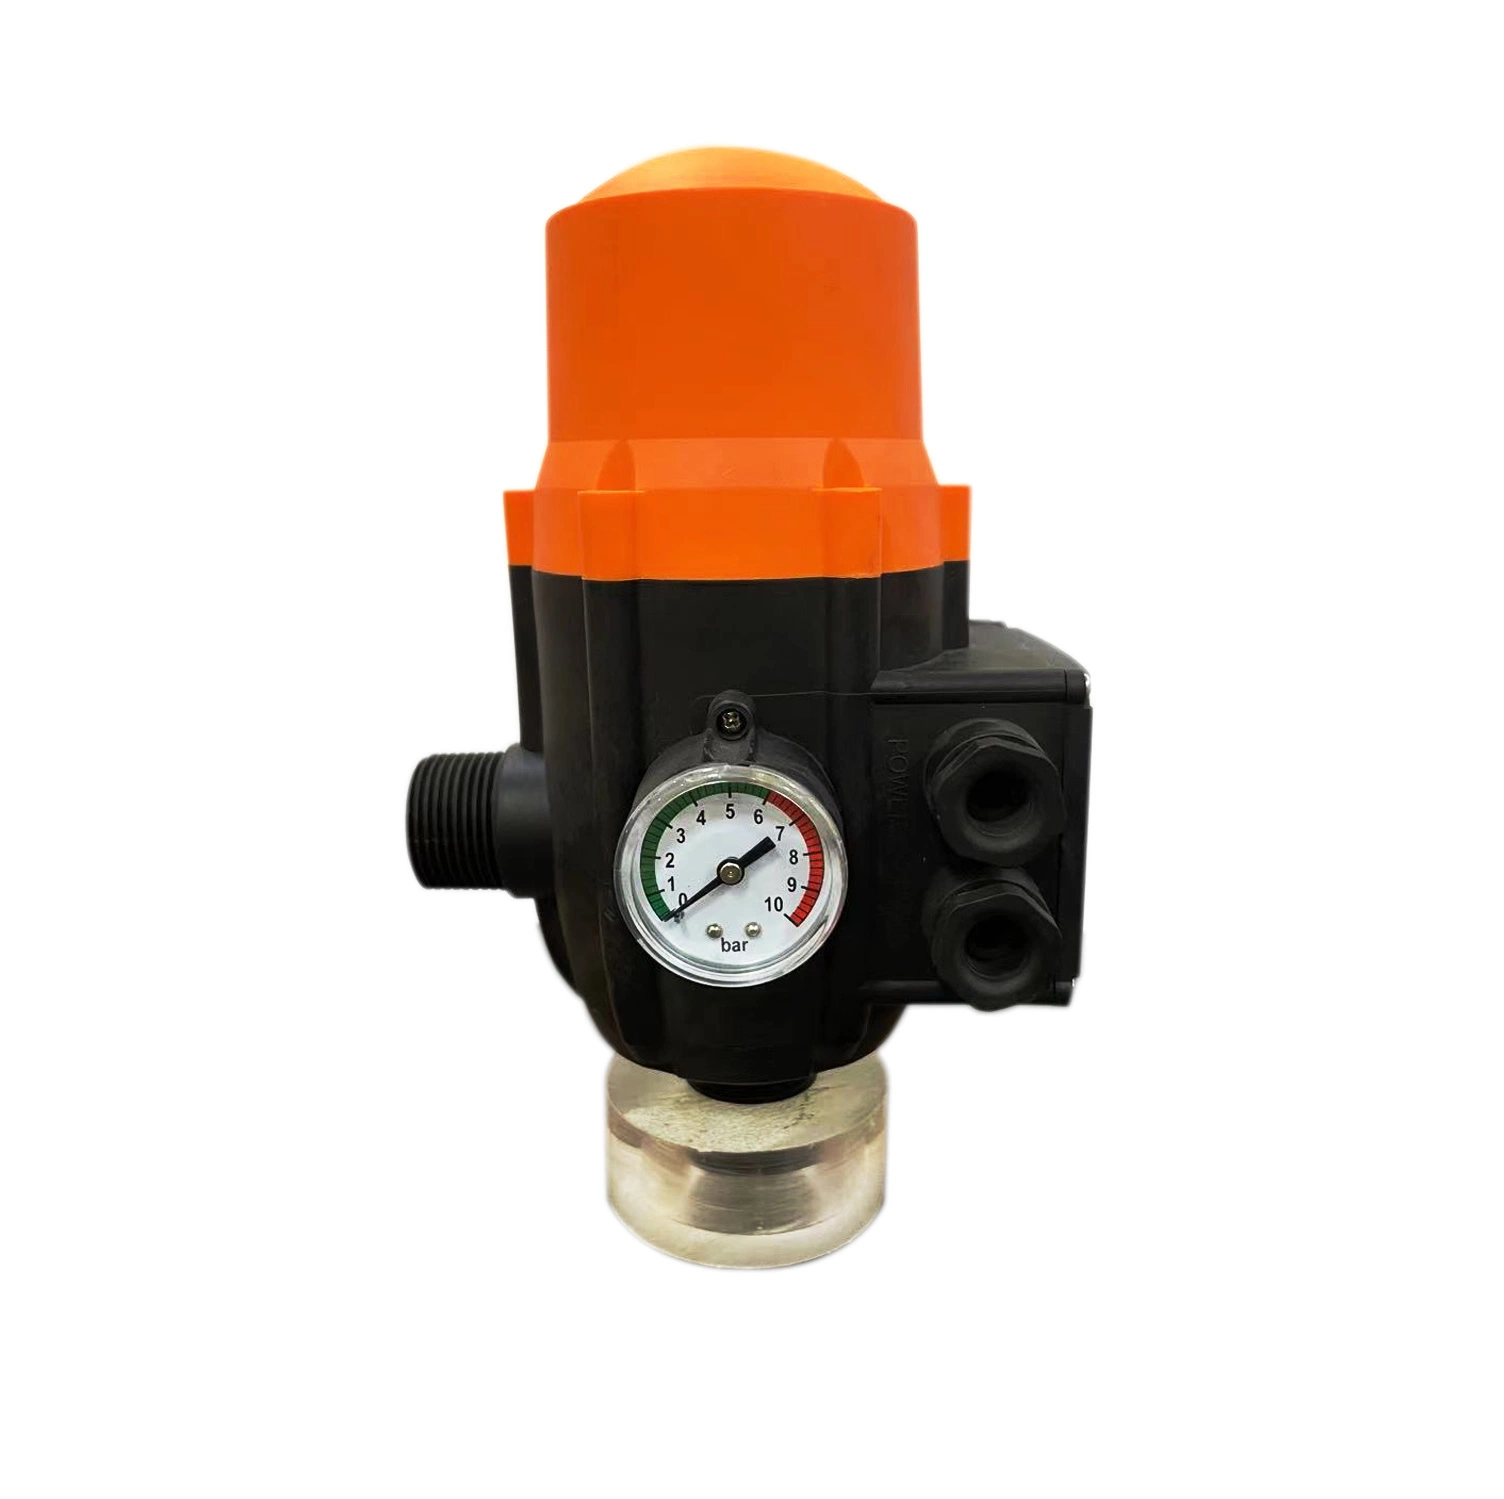 Controlo de pressão do controlador de pressão da bomba de água automática elétrica ajustável